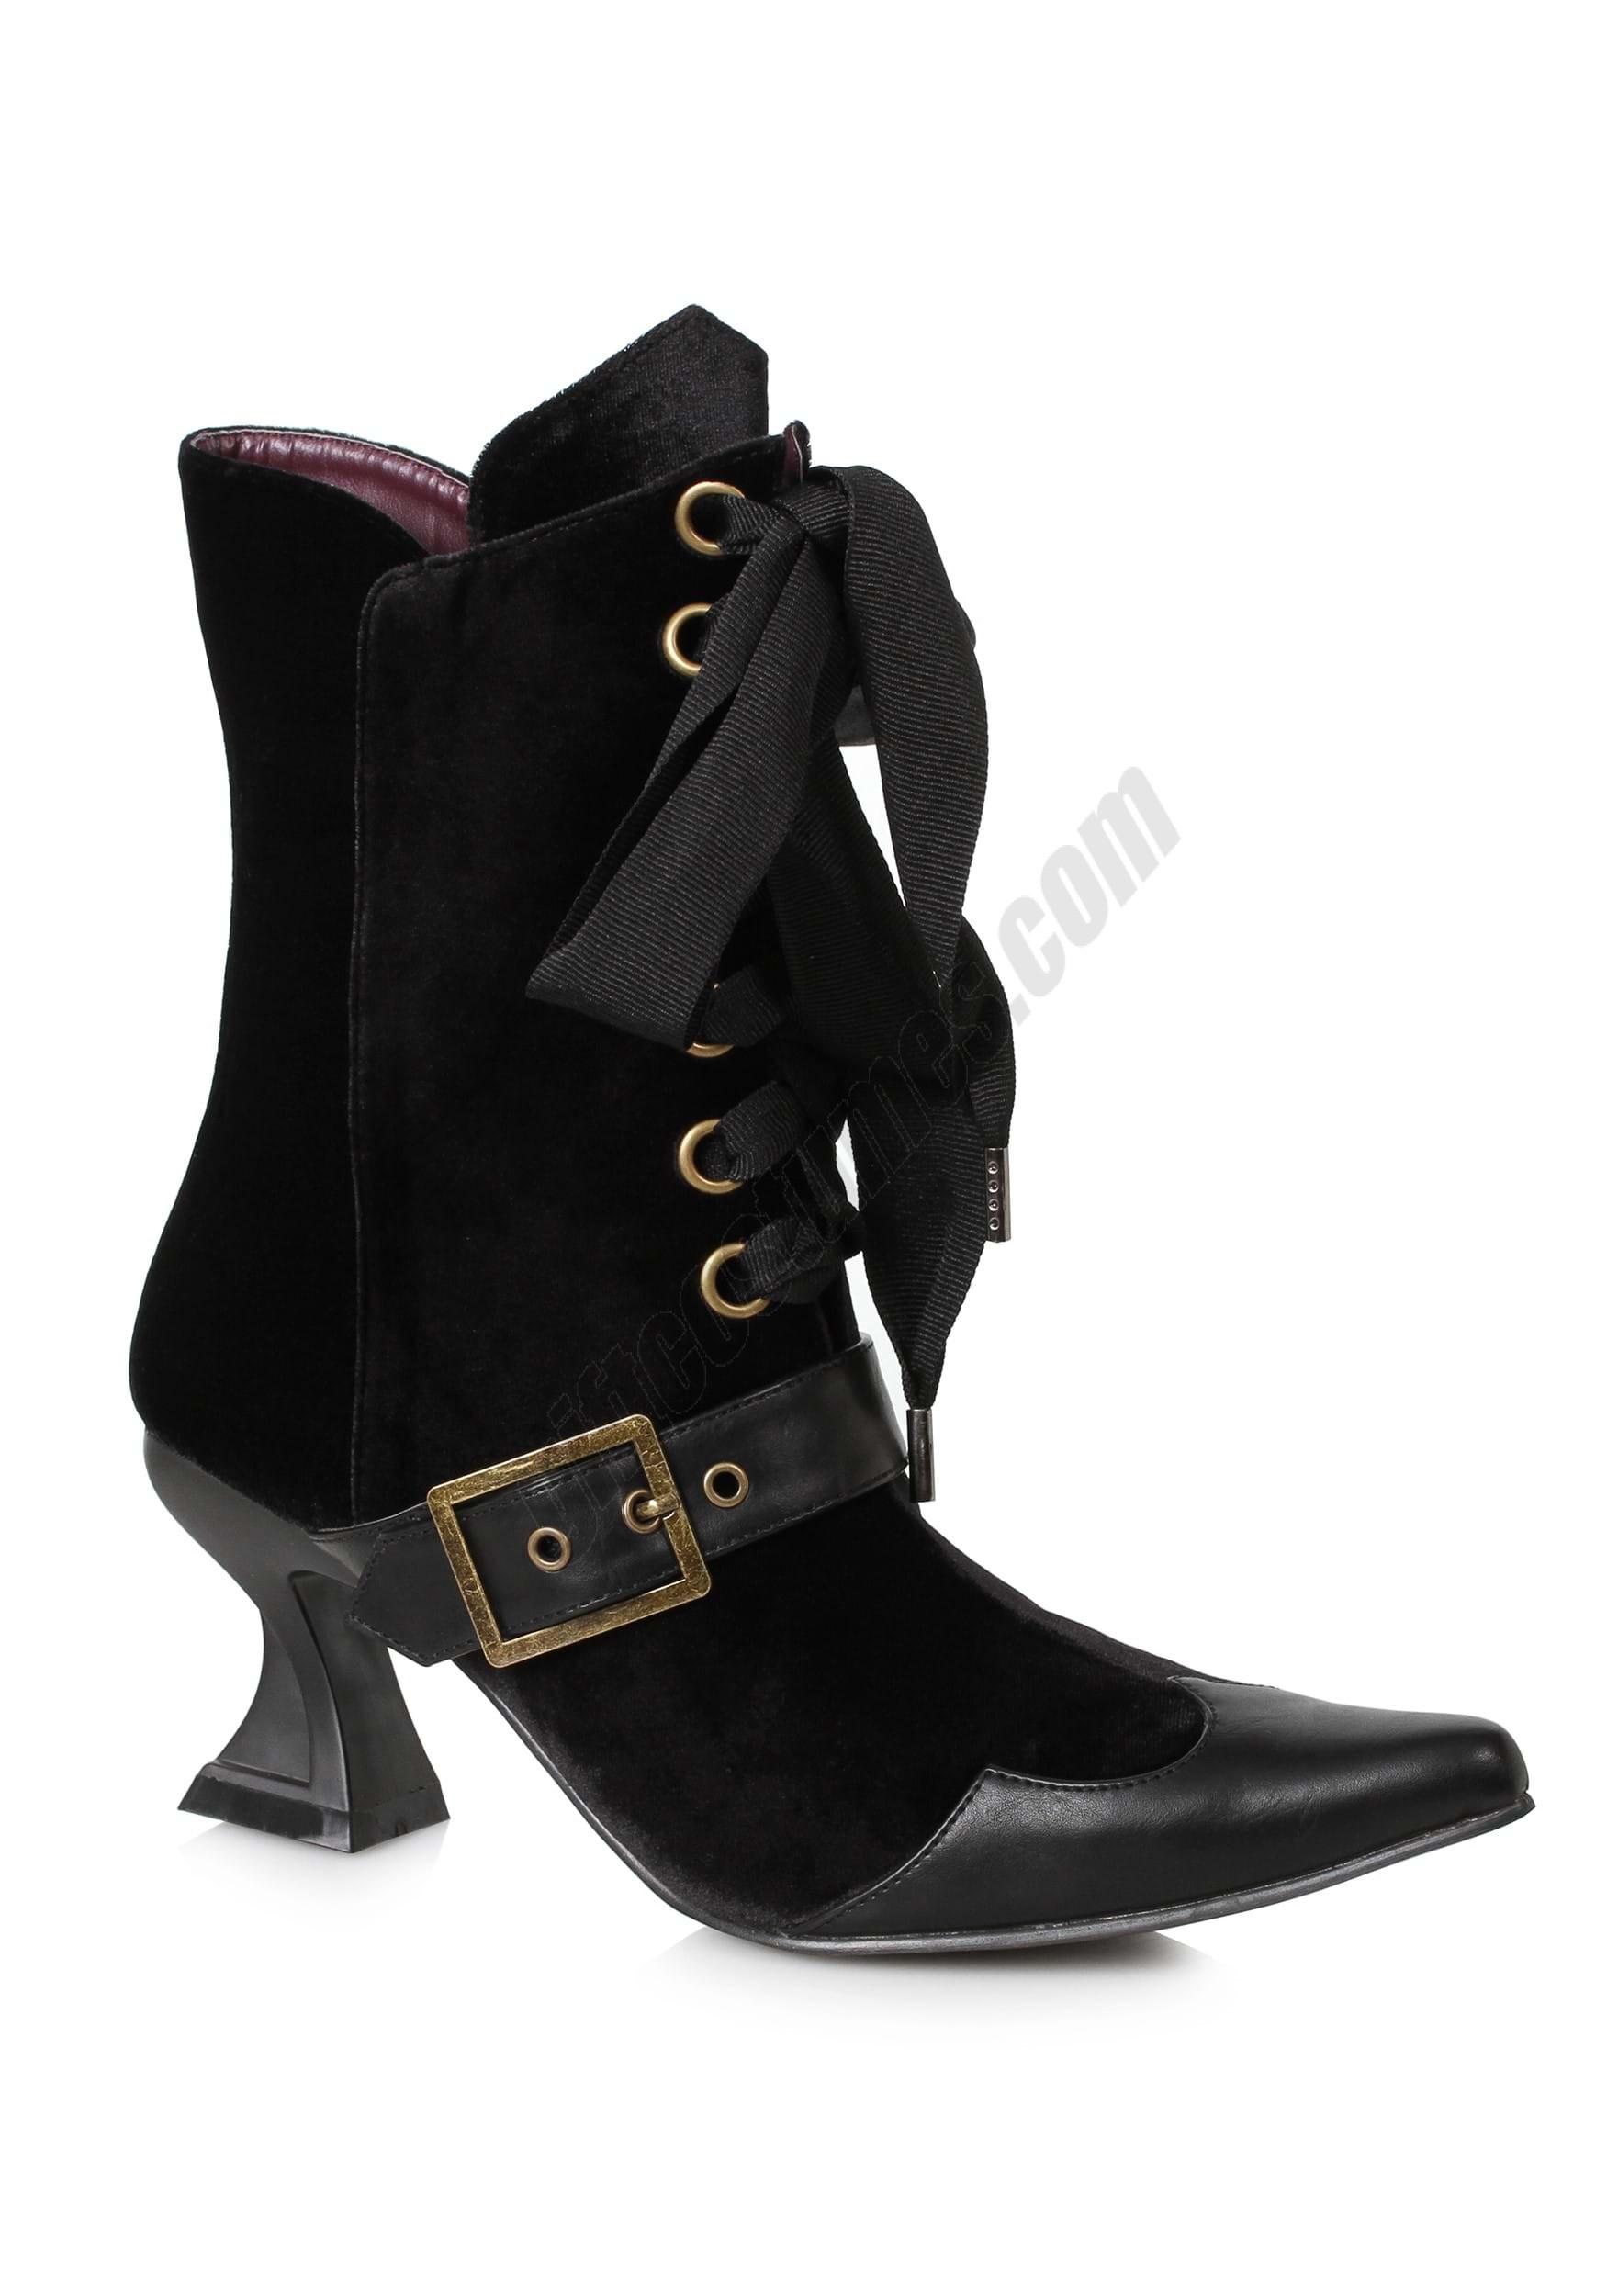 Black Velvet Heeled Boots for Women Promotions - Black Velvet Heeled Boots for Women Promotions